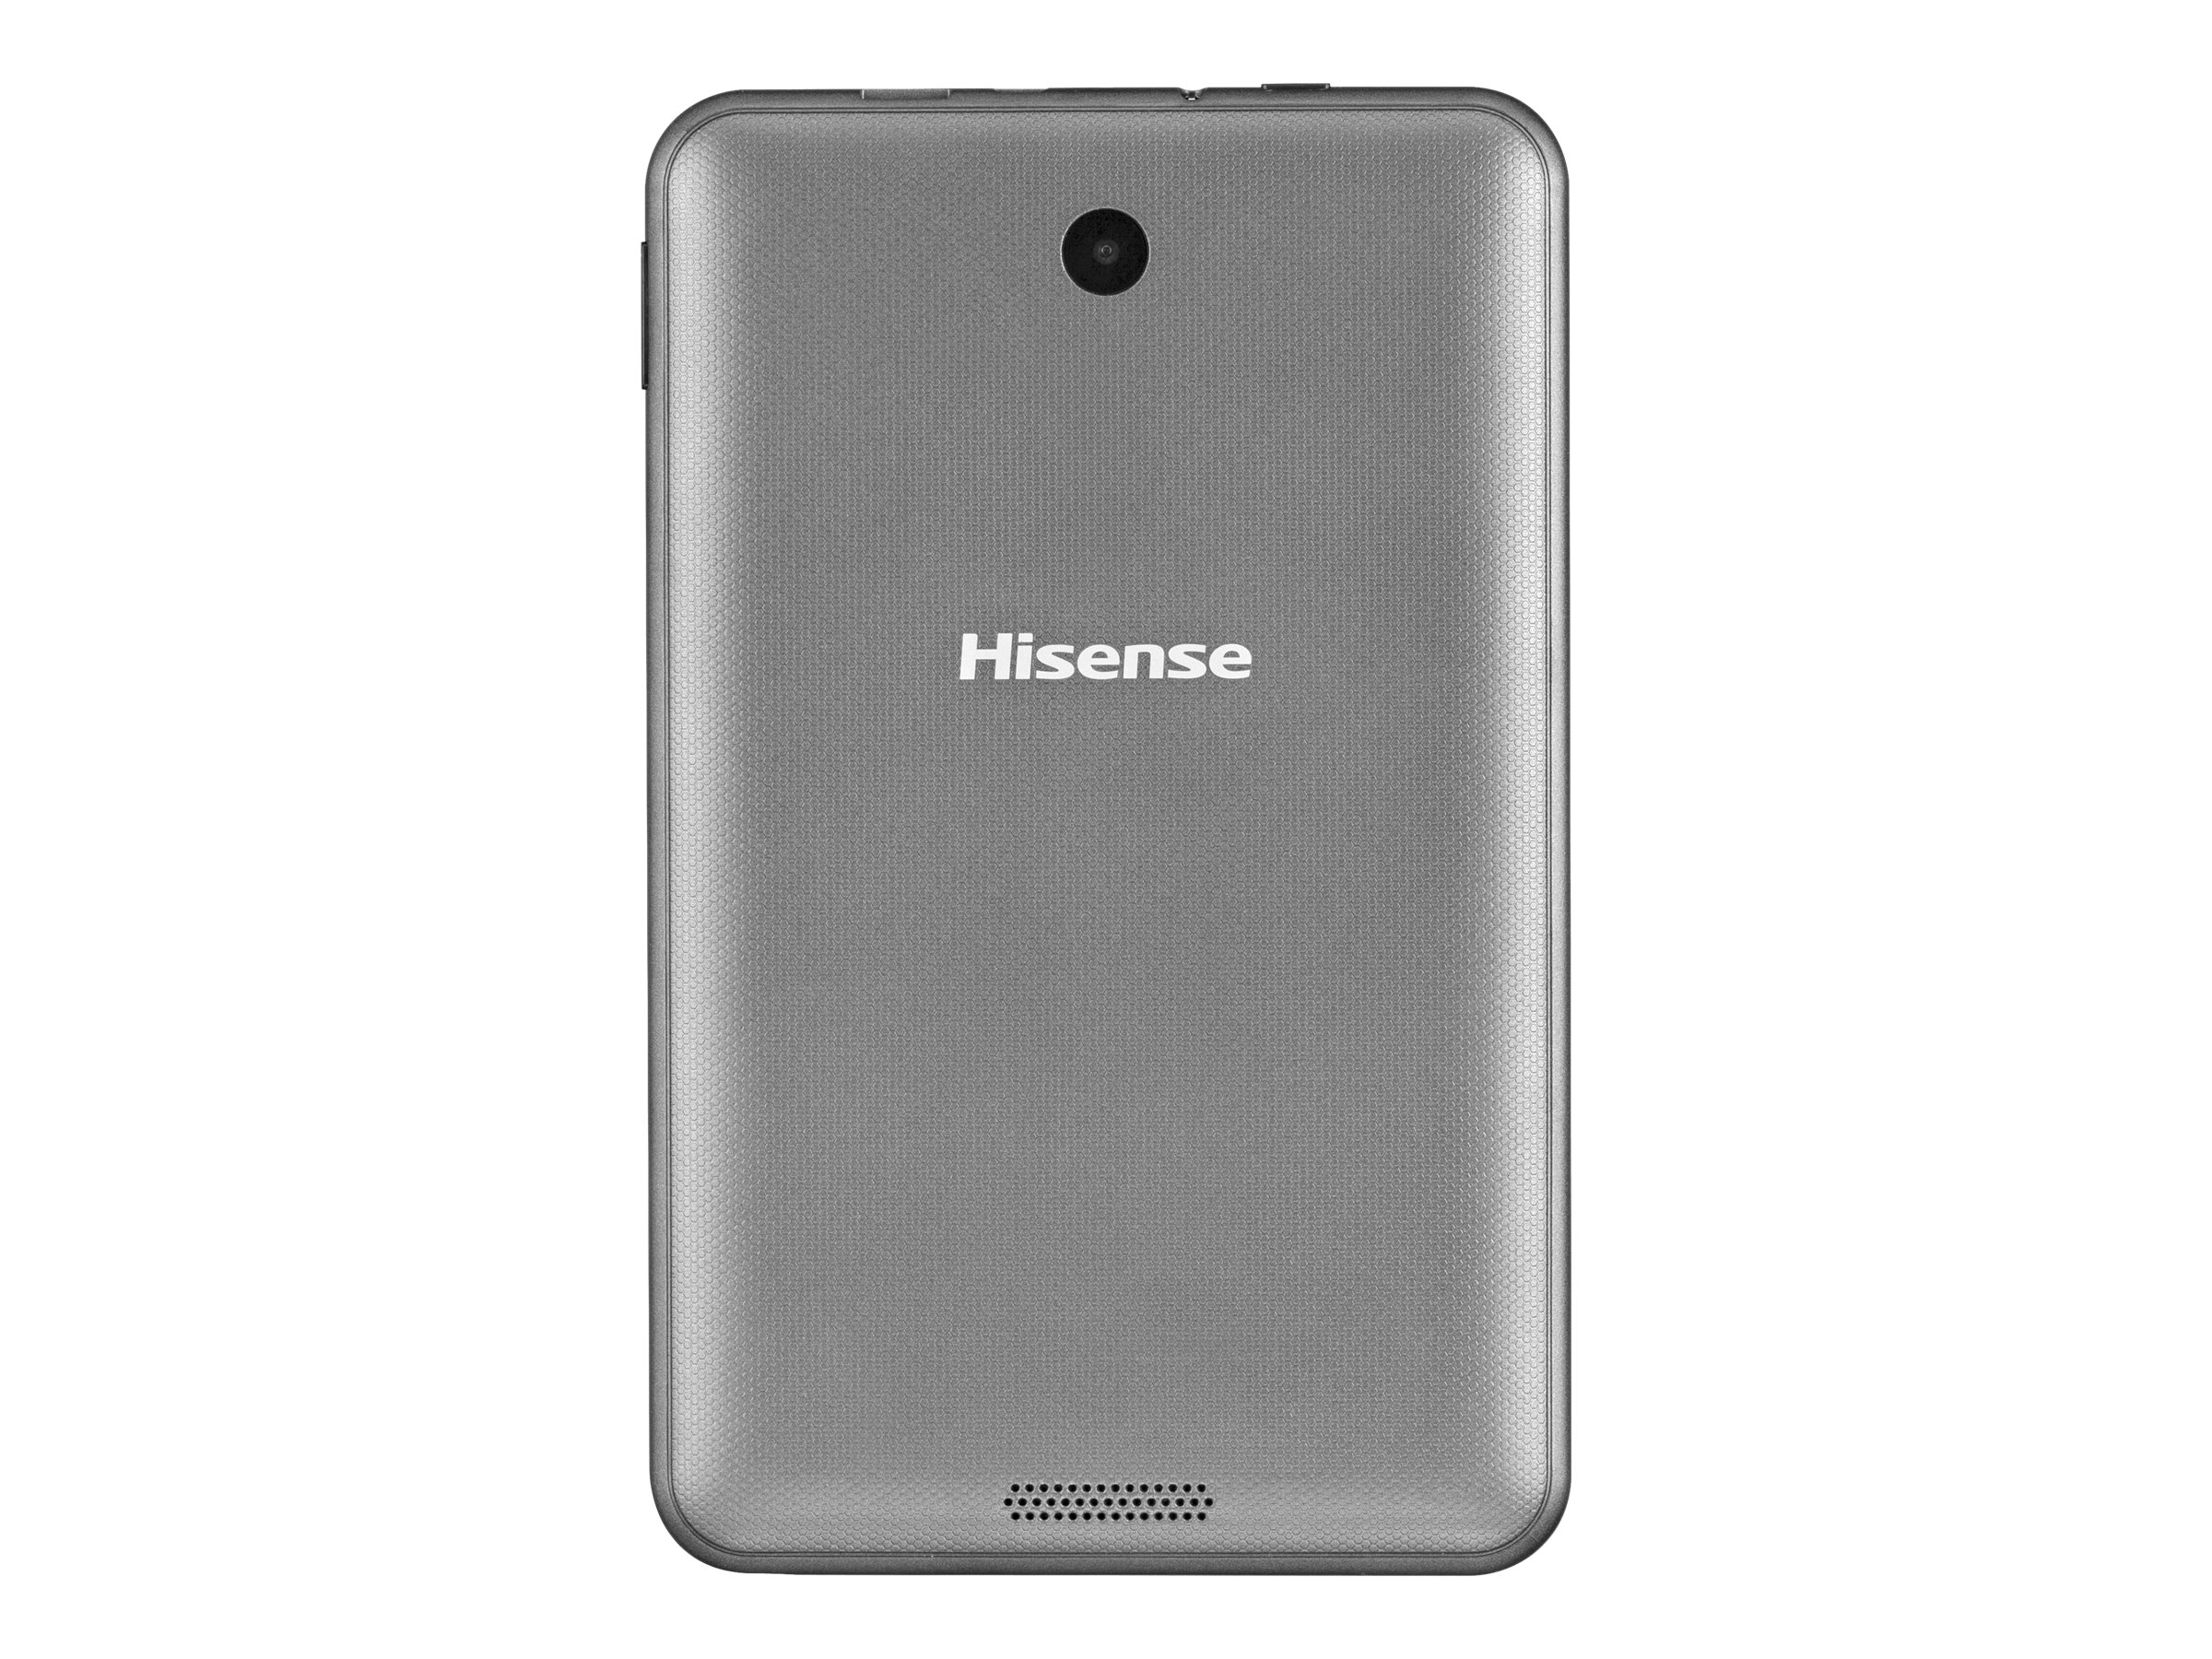 Hisense Sero 8 - Tablet - Android 4.4 (KitKat) - 16 GB - 8" (1280 x 800) - USB host - microSD slot - image 5 of 6